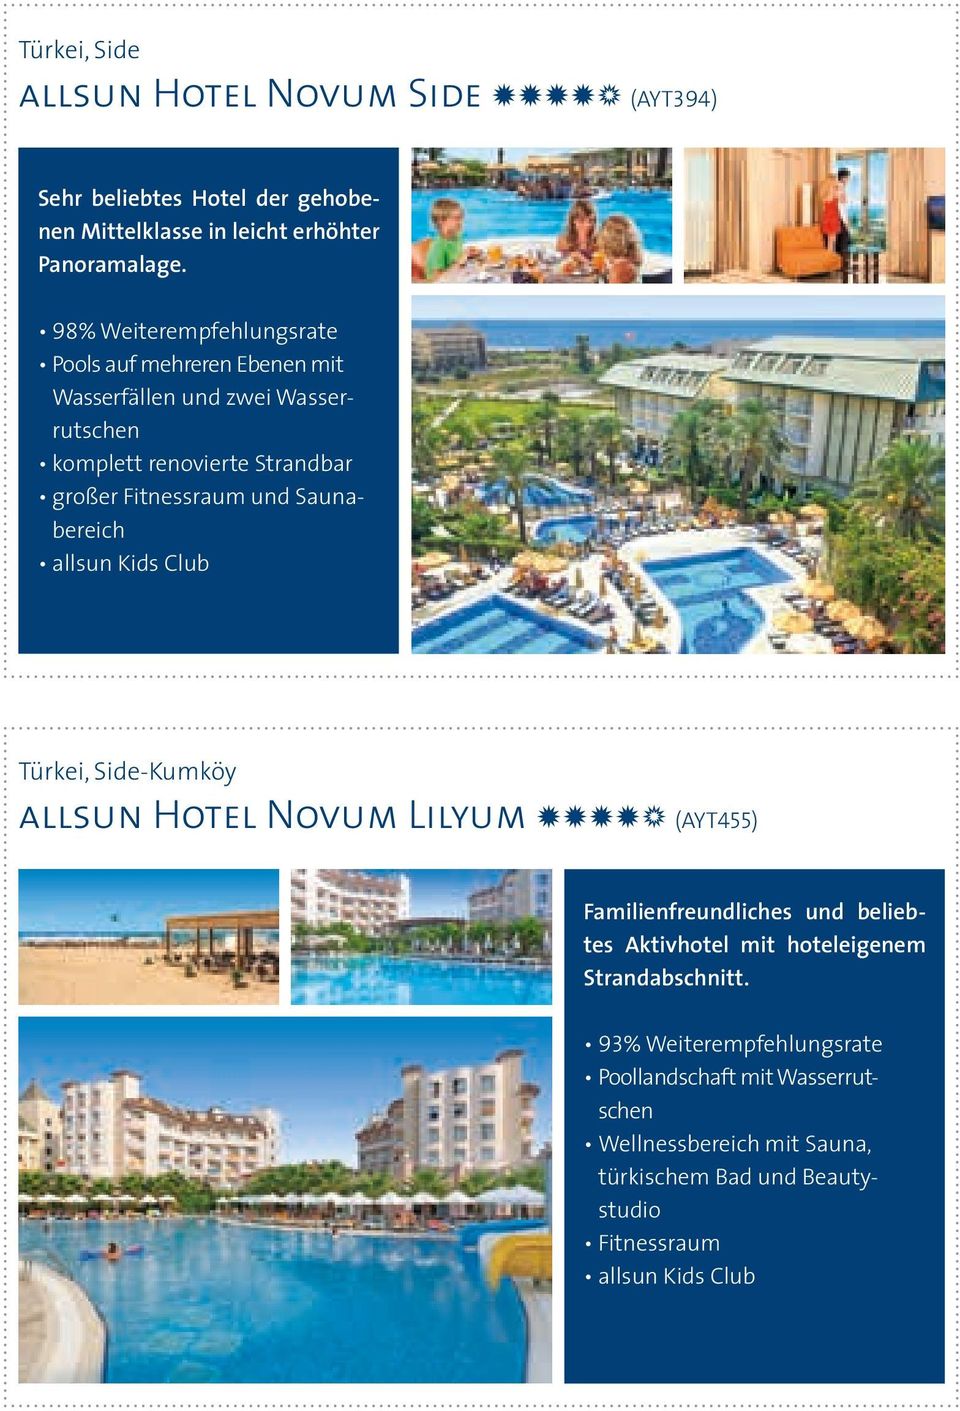 Fitnessraum und Saunabereich Türkei, Side-Kumköy allsun Hotel Novum Lilyum NNNNn (AYT455) Familienfreundliches und beliebtes Aktivhotel mit